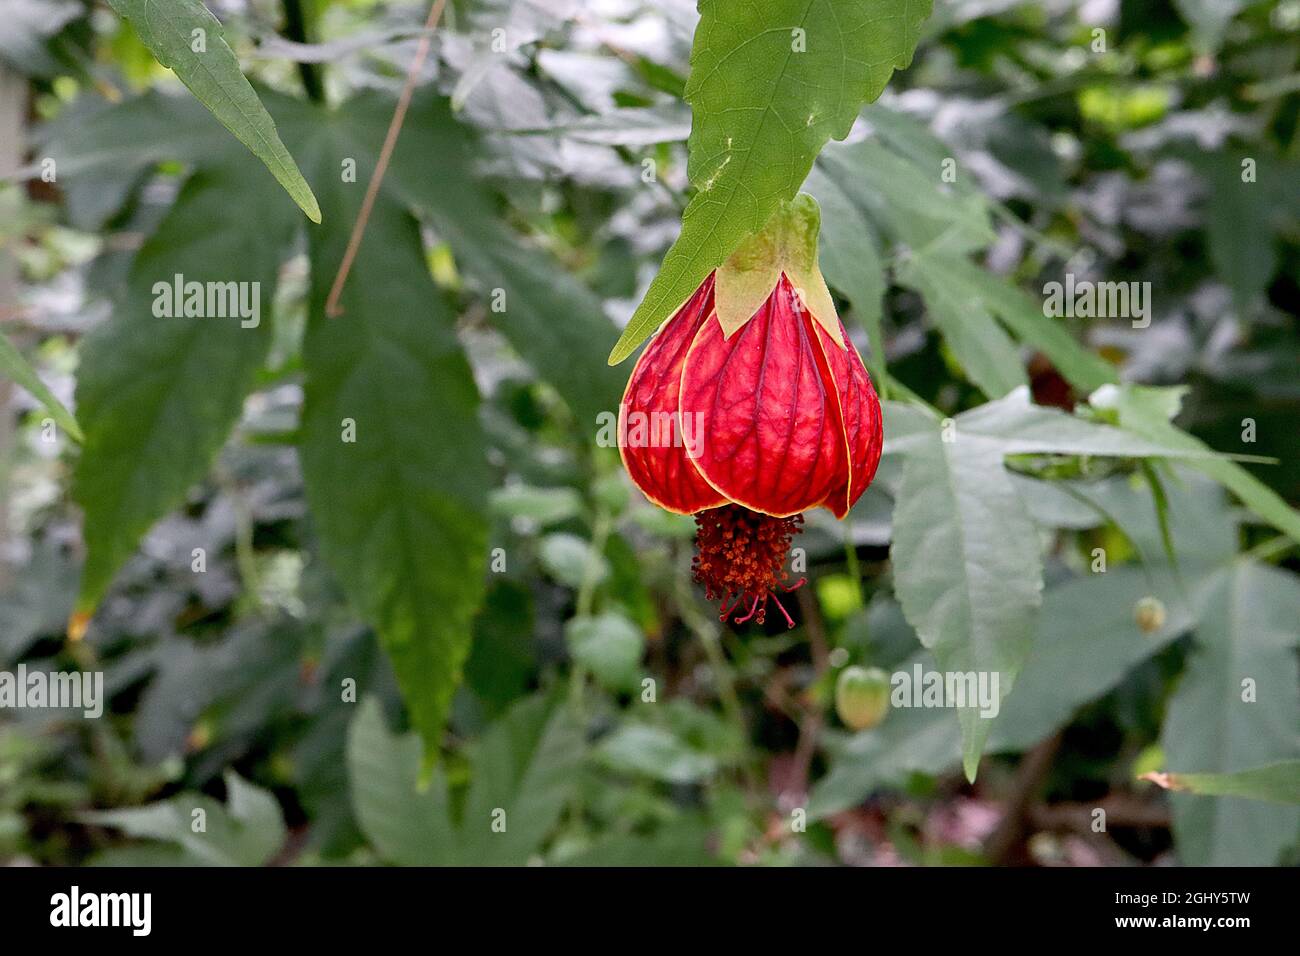 Callianthe pitta Abutilon pictum – fiori a forma di campana rossa con vene di maroon e setti a cappuccio verde chiaro, agosto, Inghilterra, Regno Unito Foto Stock